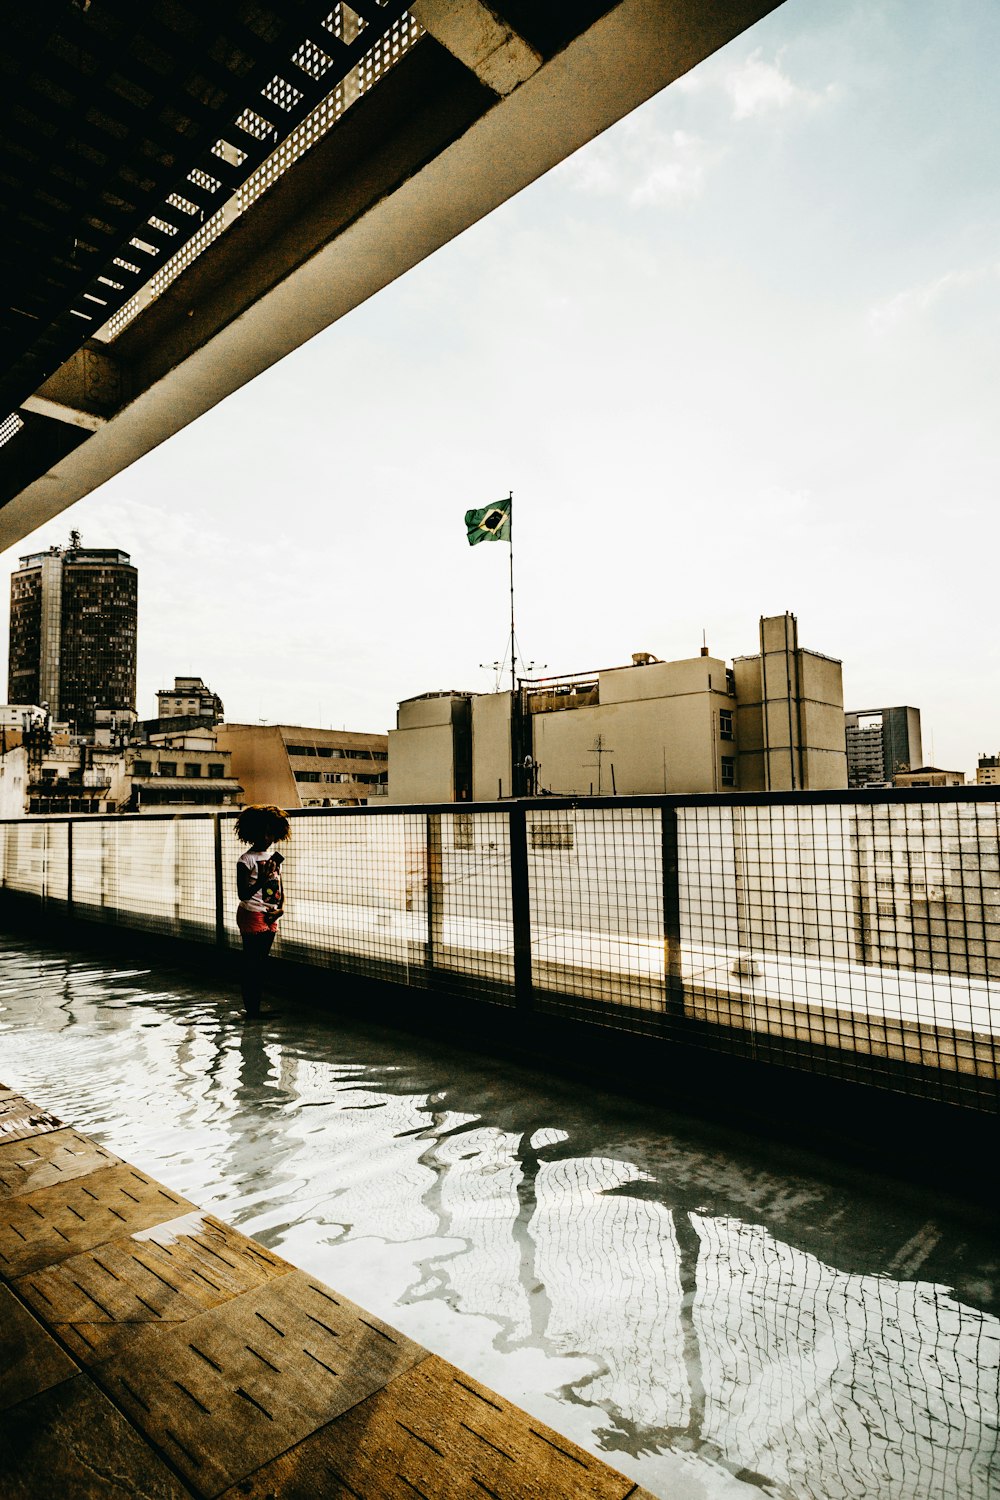 Una persona parada en un puente sobre un cuerpo de agua